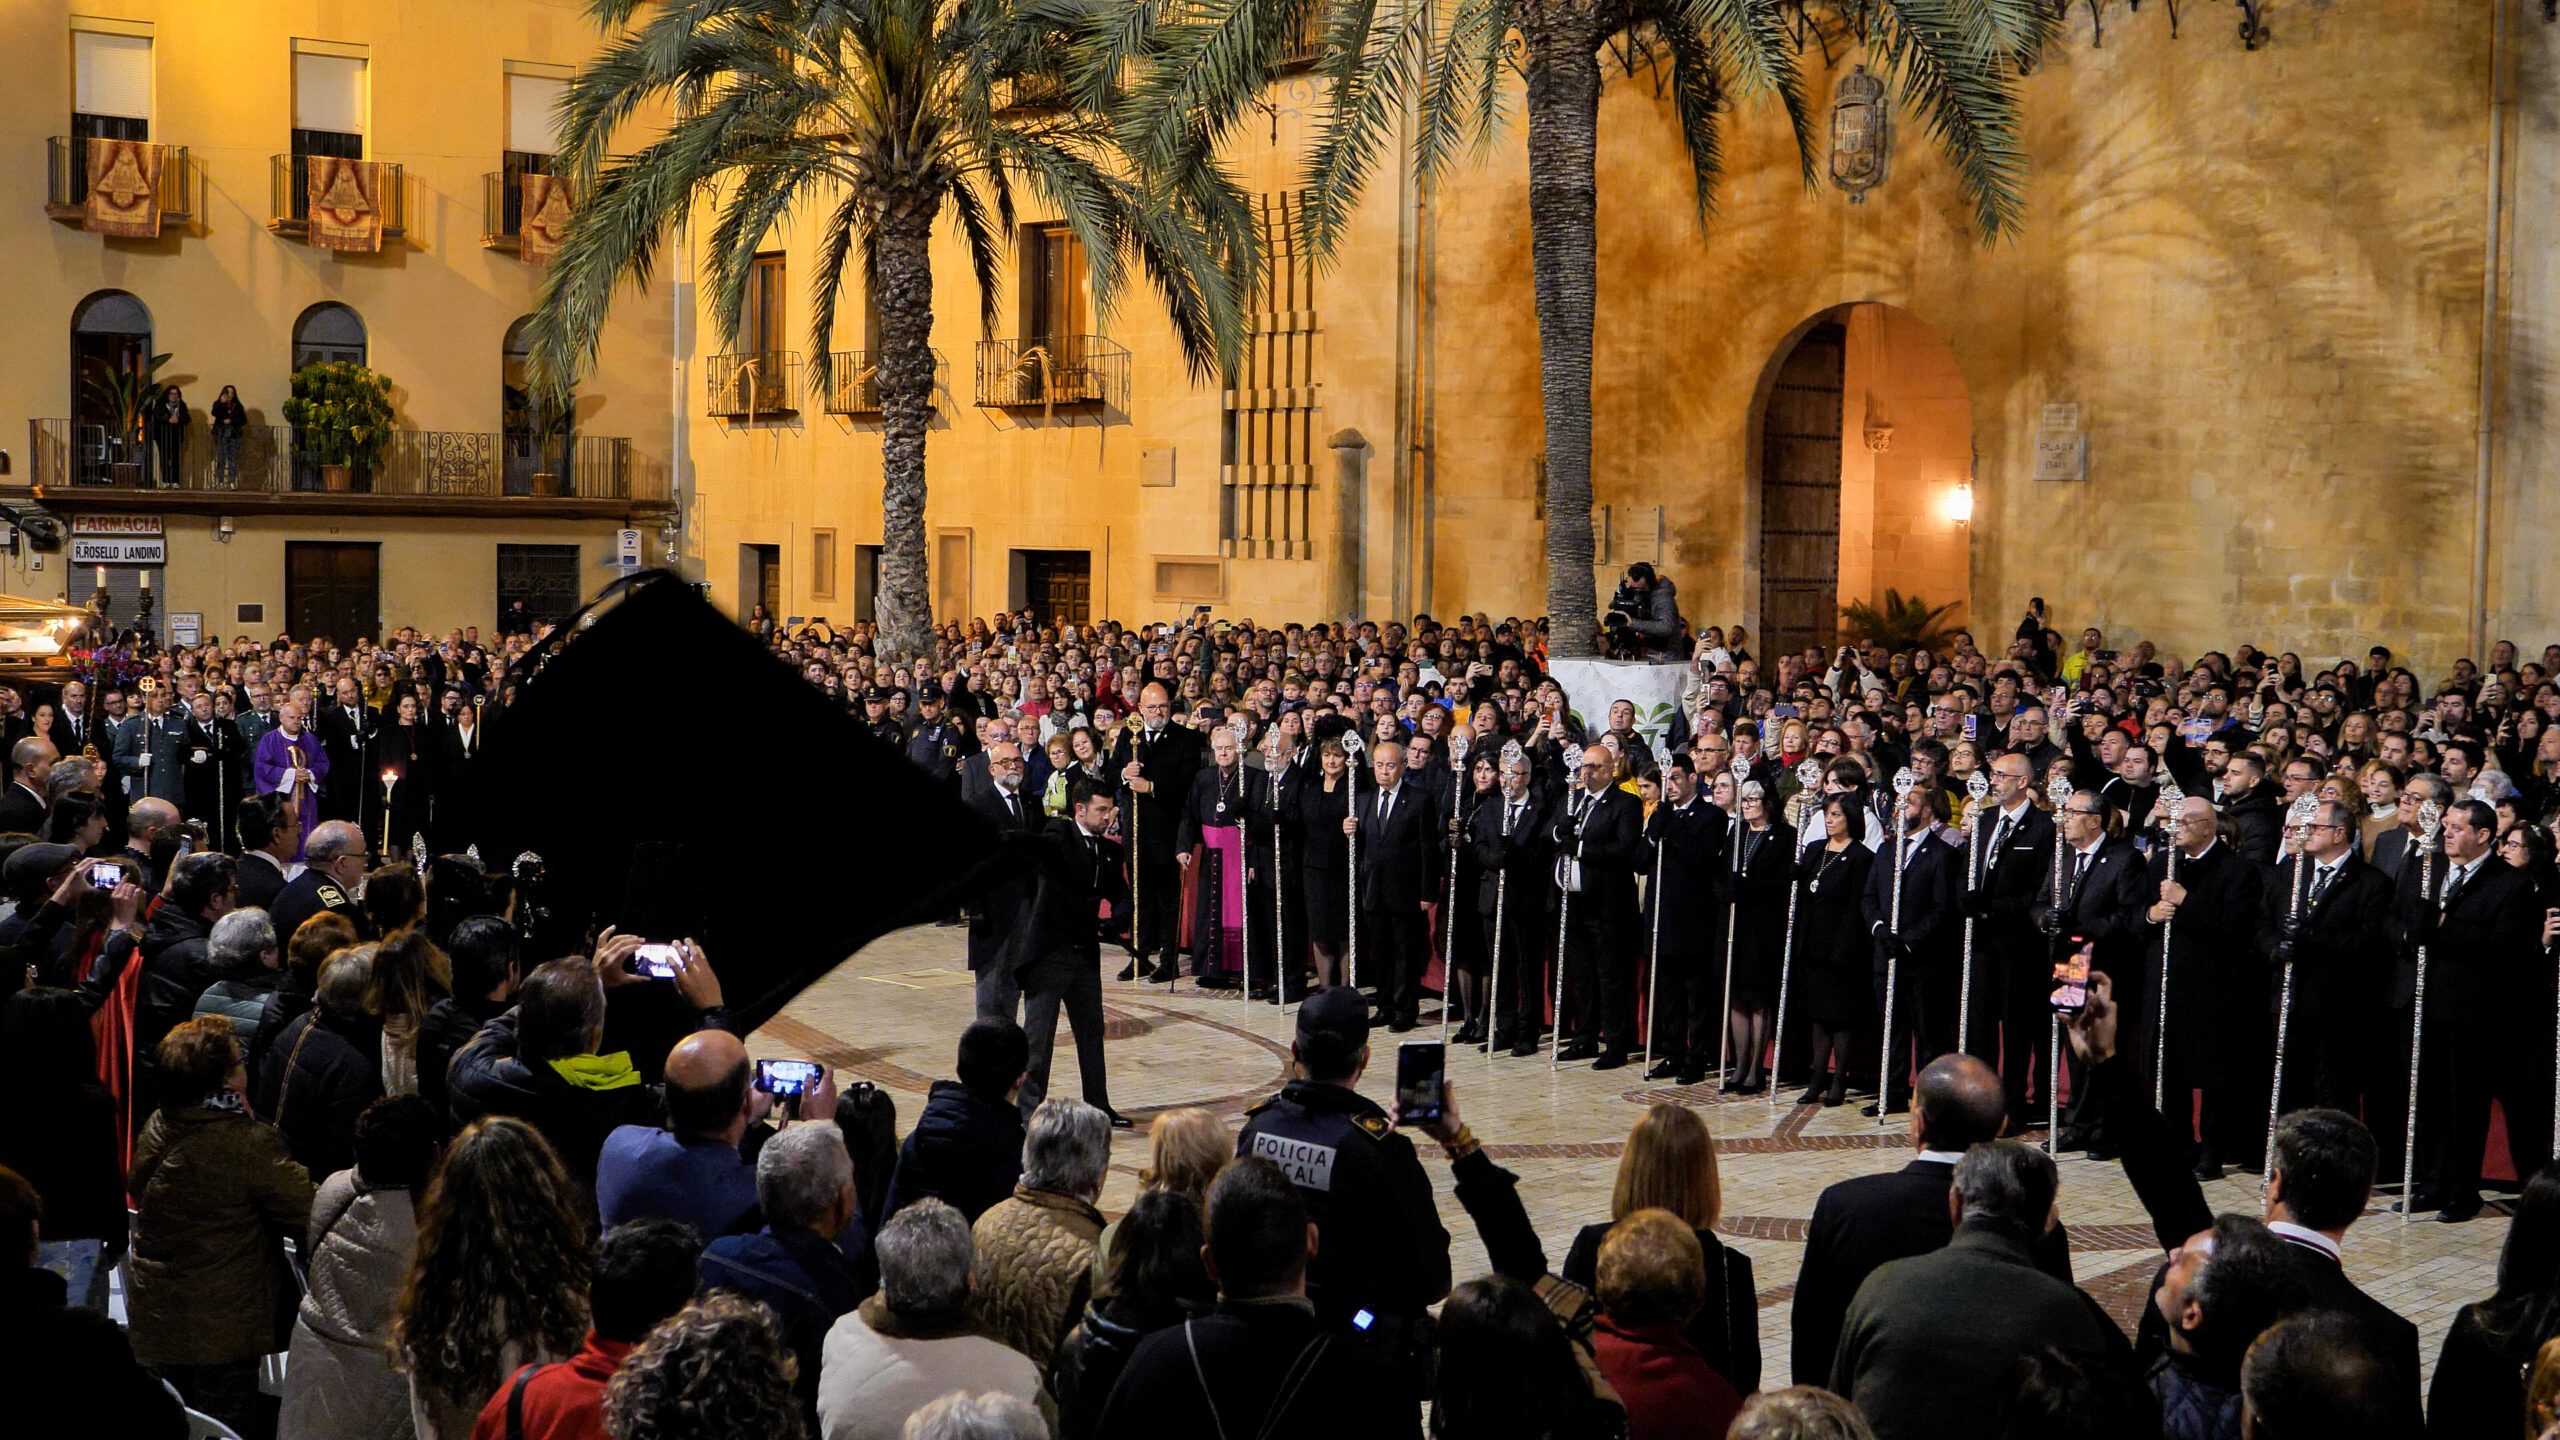 Foto de la Trencà del Guió una tradición que se remonta en Elche al s.XVI. Se celebra el Viernes de la Semana Santa.